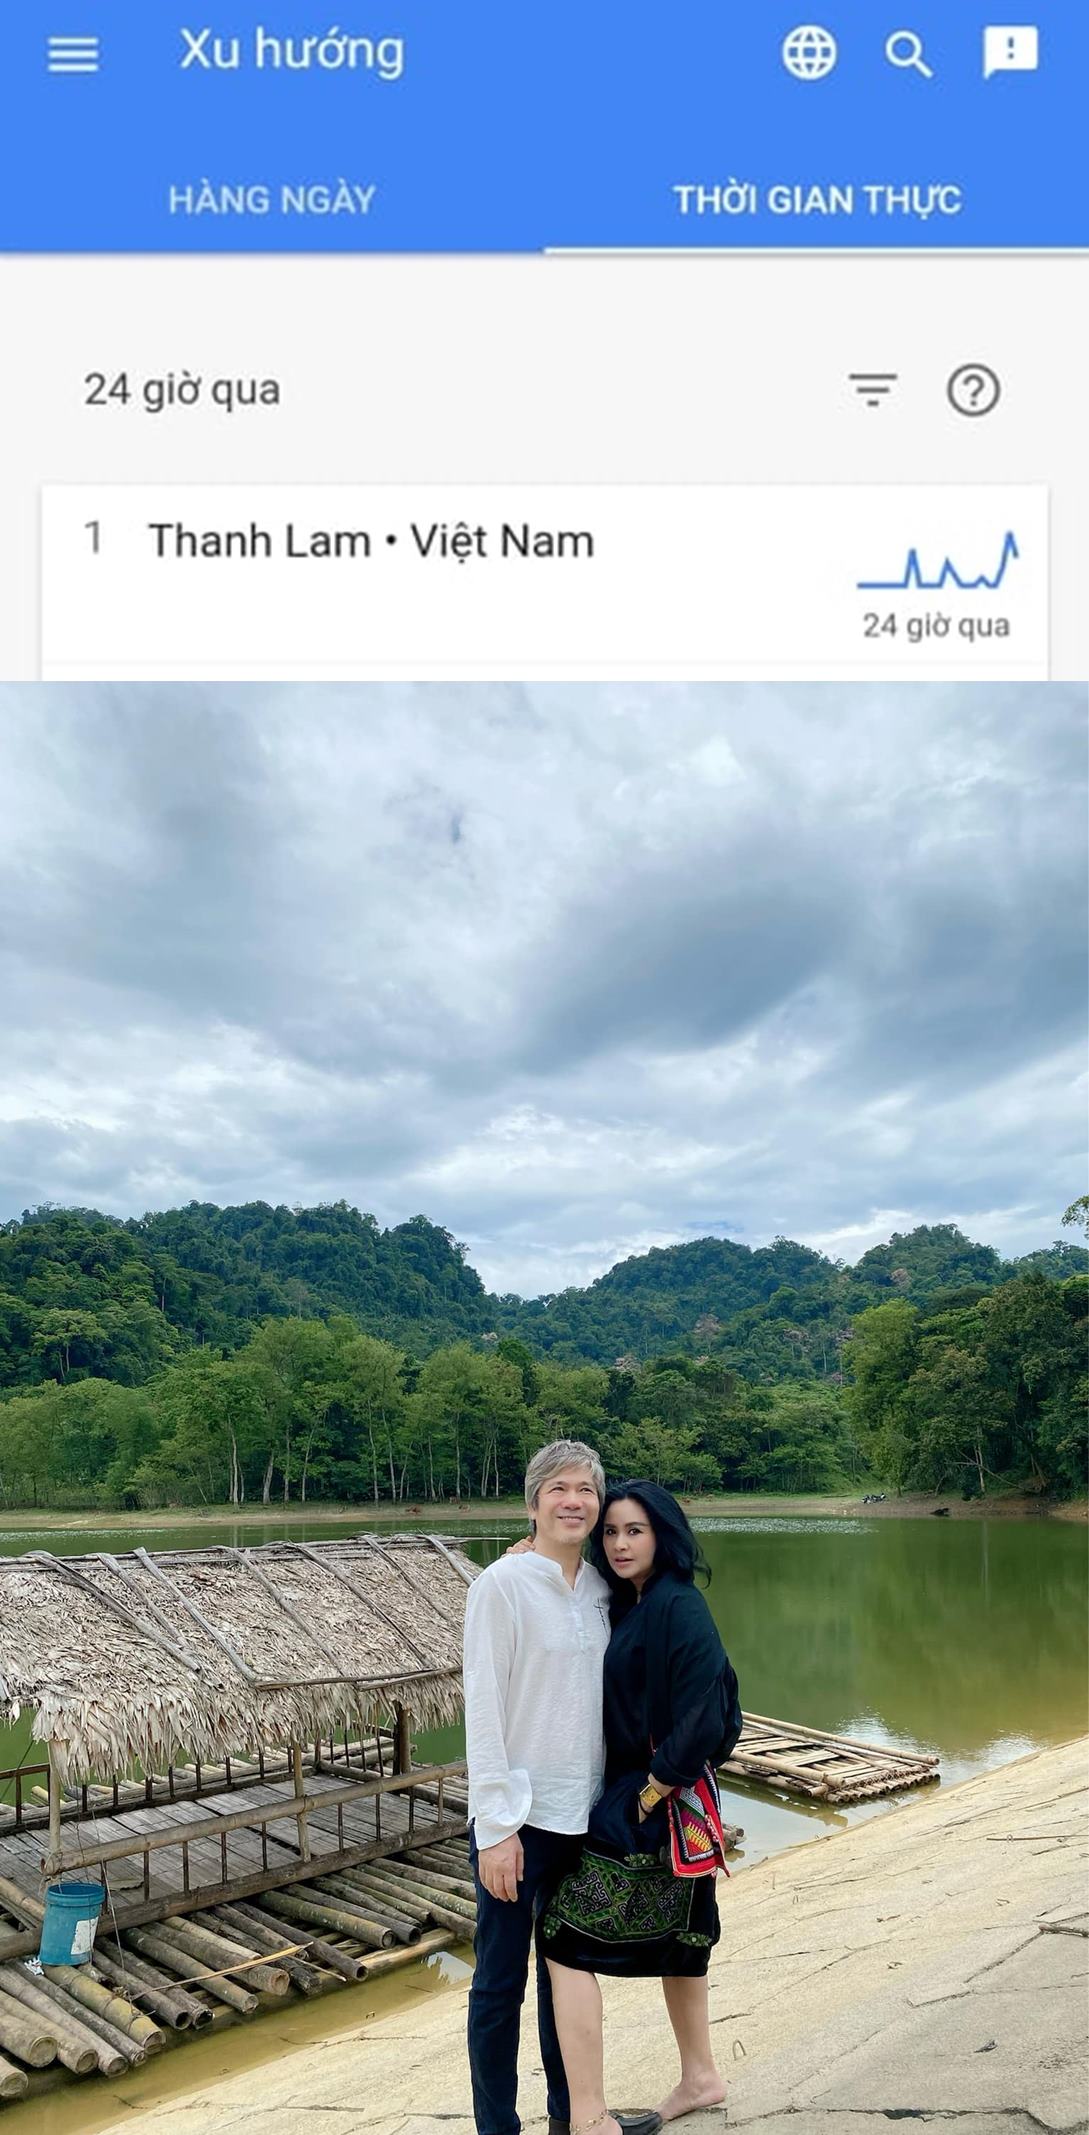 Thanh Lam lên top 1 tìm kiếm vì nhuận sắc, tuổi 53 vẫn là người đàn bà đẹp - 3